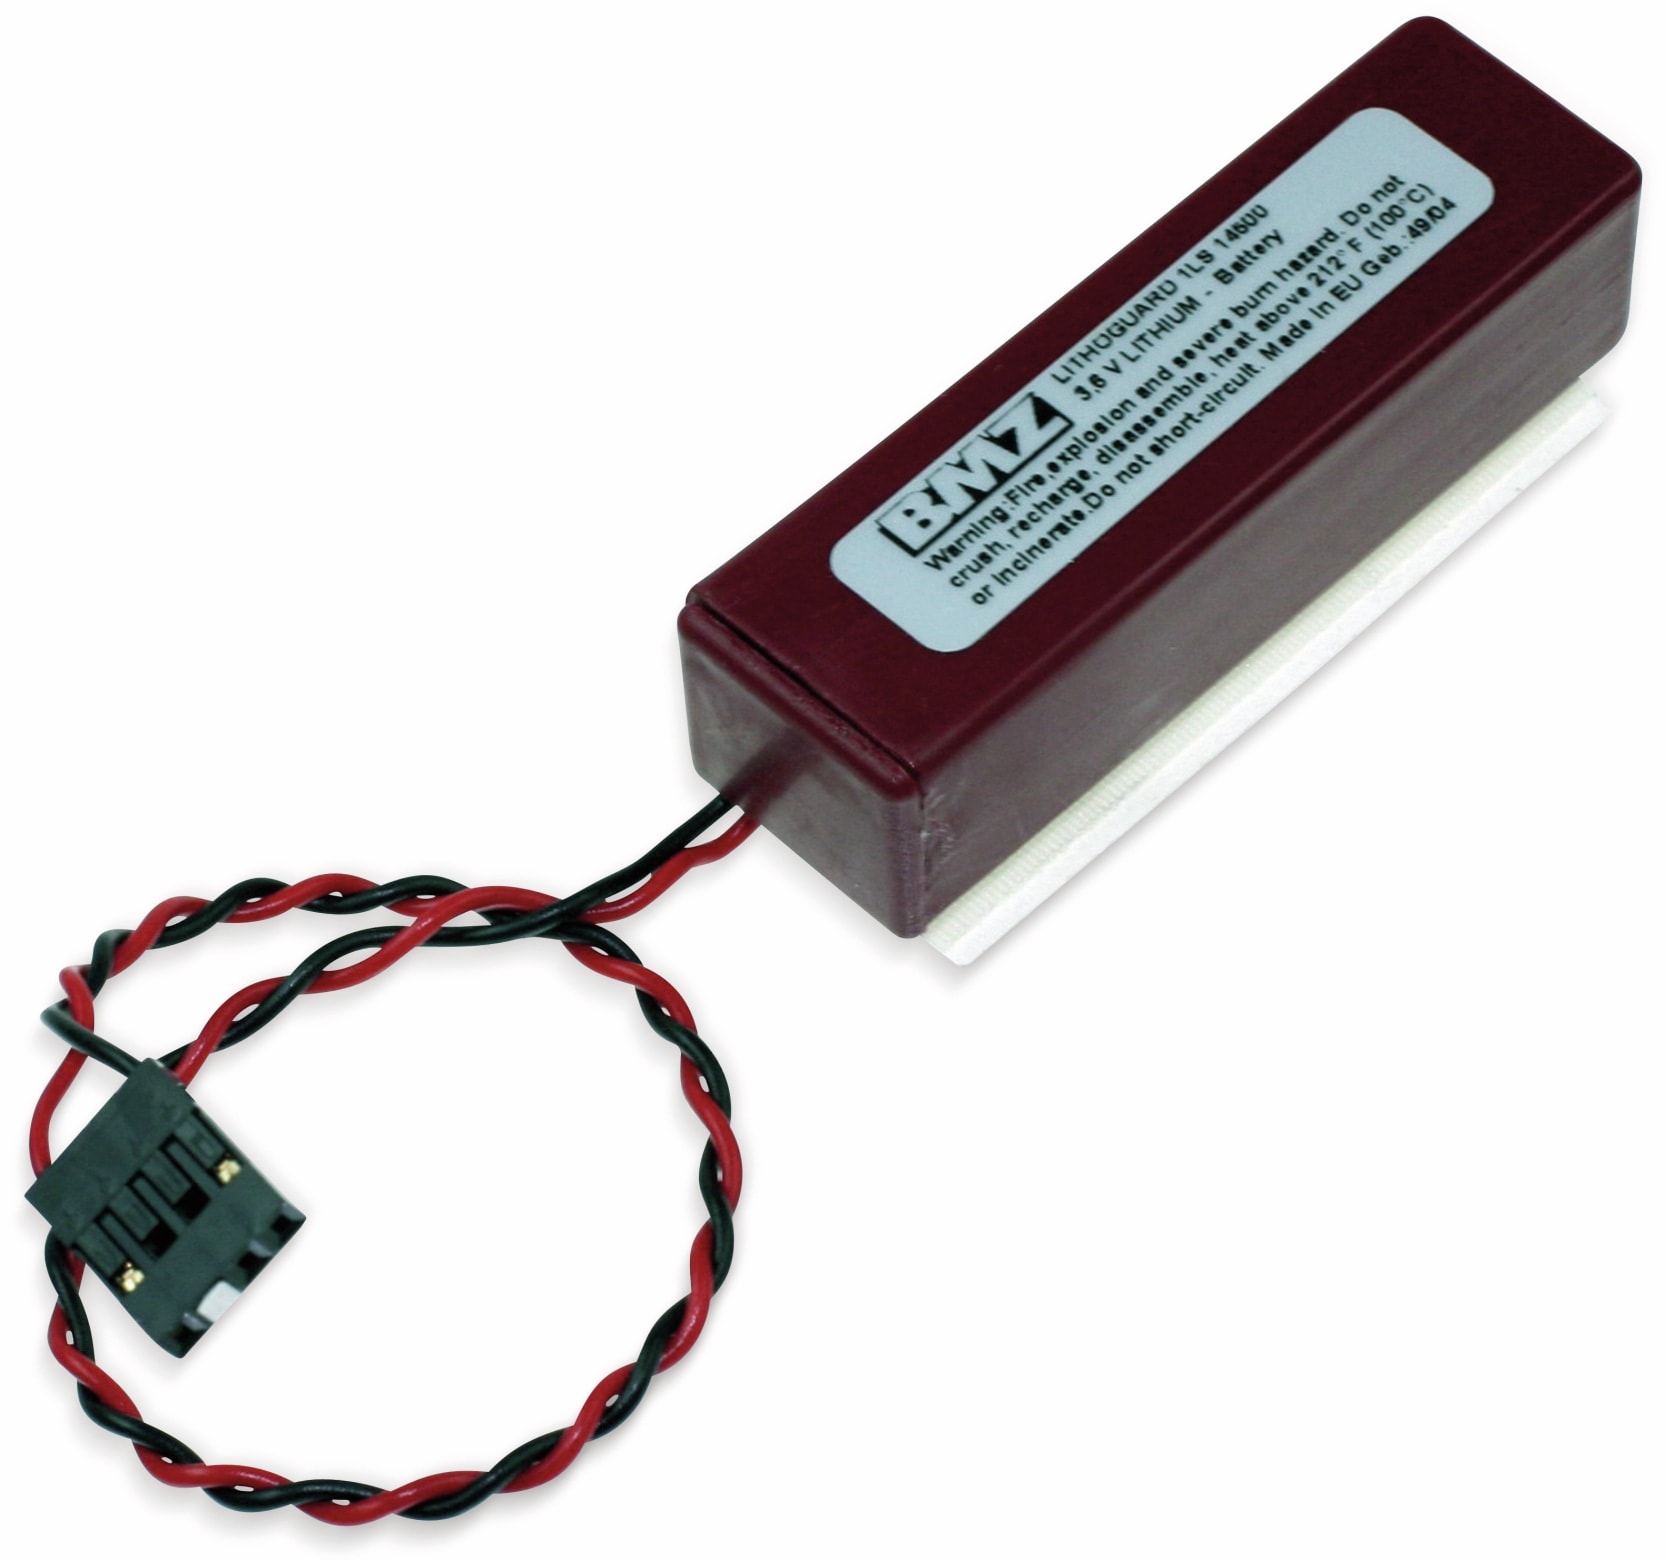 SAFT Lithium-Batterie 1LS145000, AA, Lithoguard, mit Kabel u. Stecker, 3,6 V-